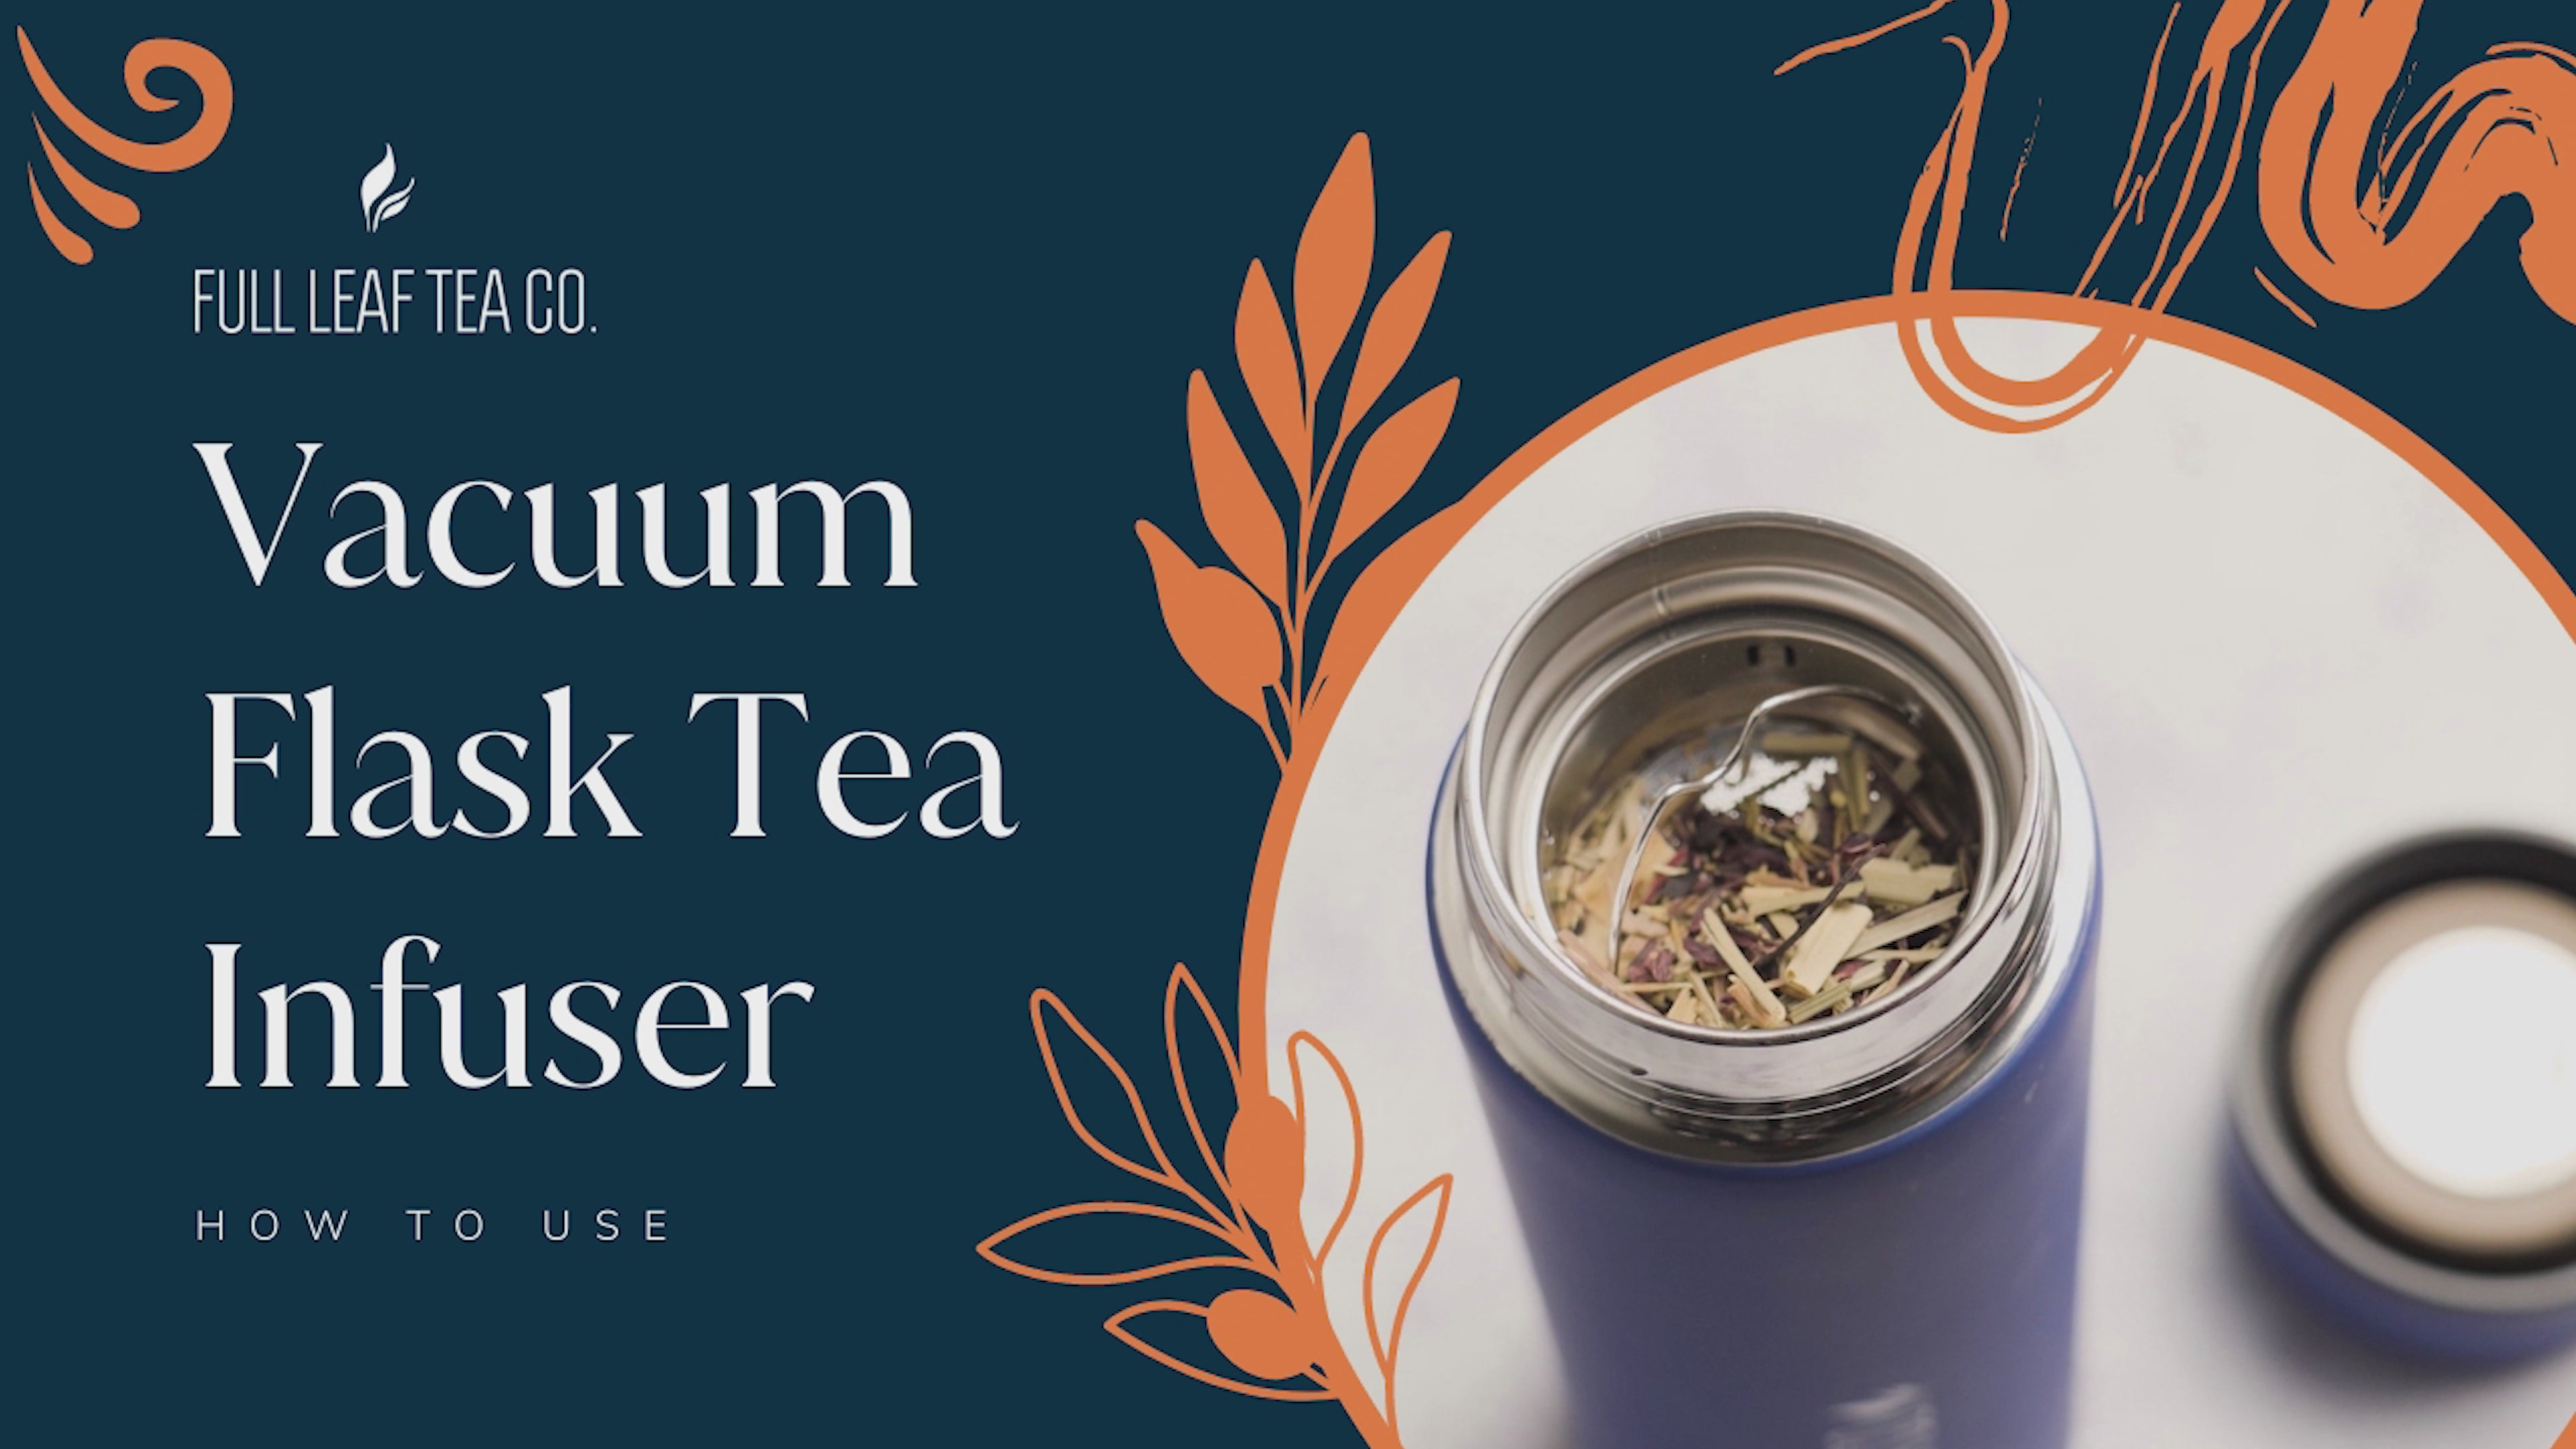 Full Leaf Vacuum Flask Tea Infuser-3